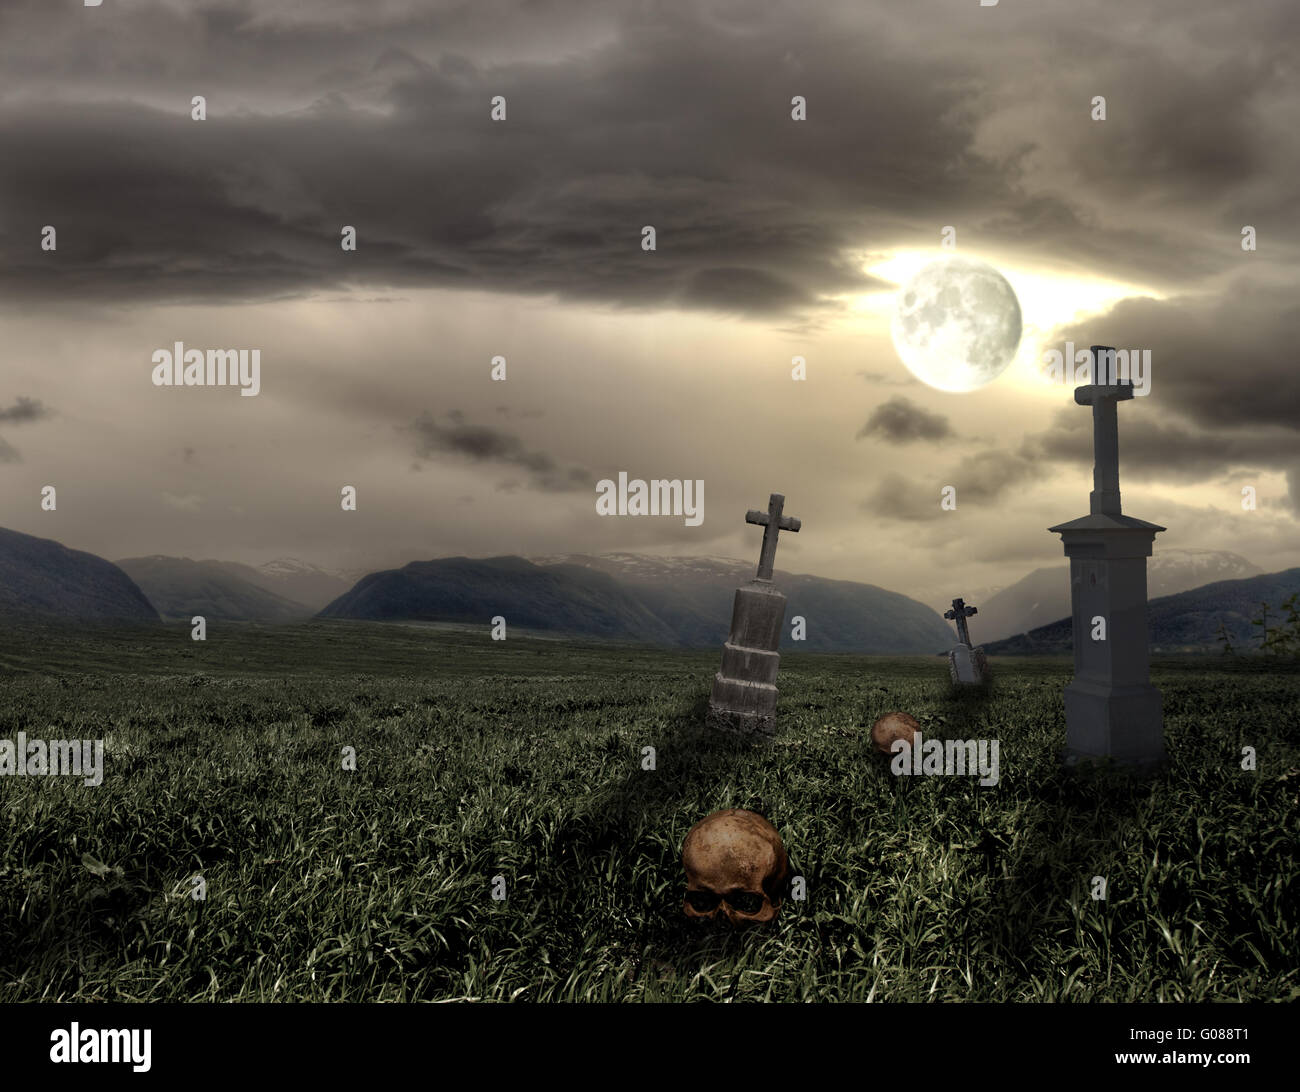 Spooky Halloween cimetière avec des nuages sombres et la lune Banque D'Images